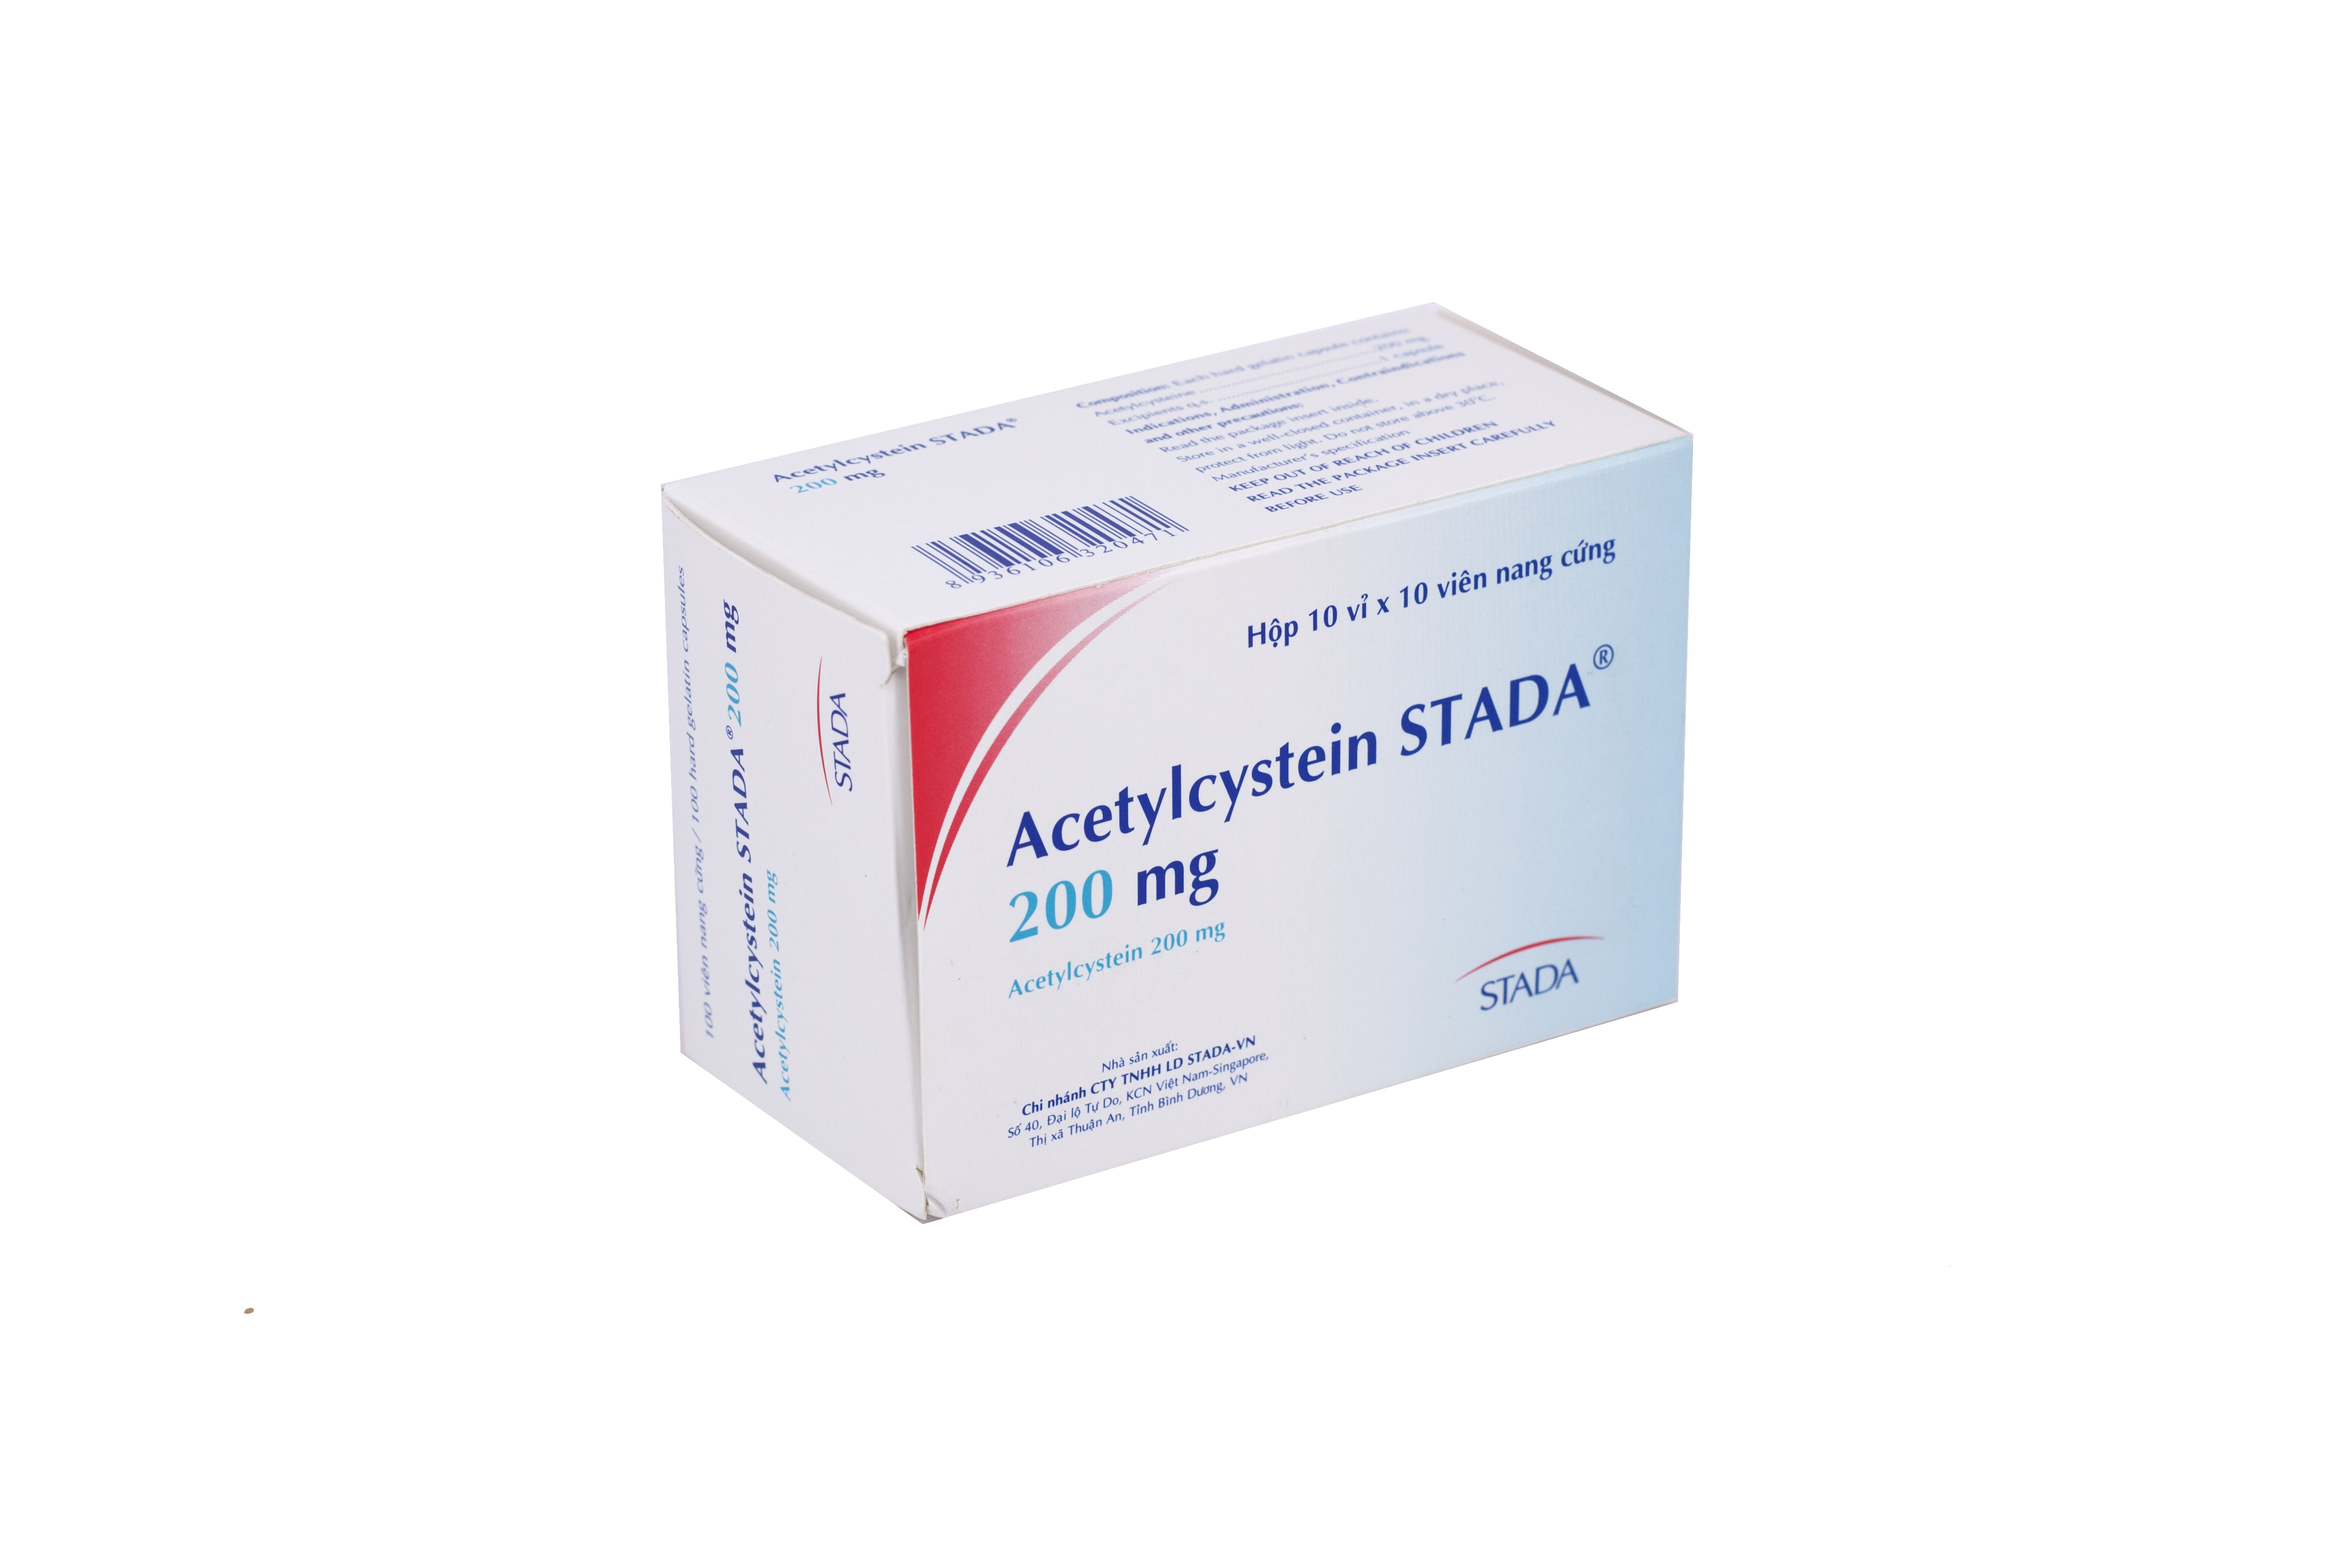 Thuốc tiêu đờm Acetylcystein 200mg: Liều dùng và một số lưu ý trước khi sử dụng